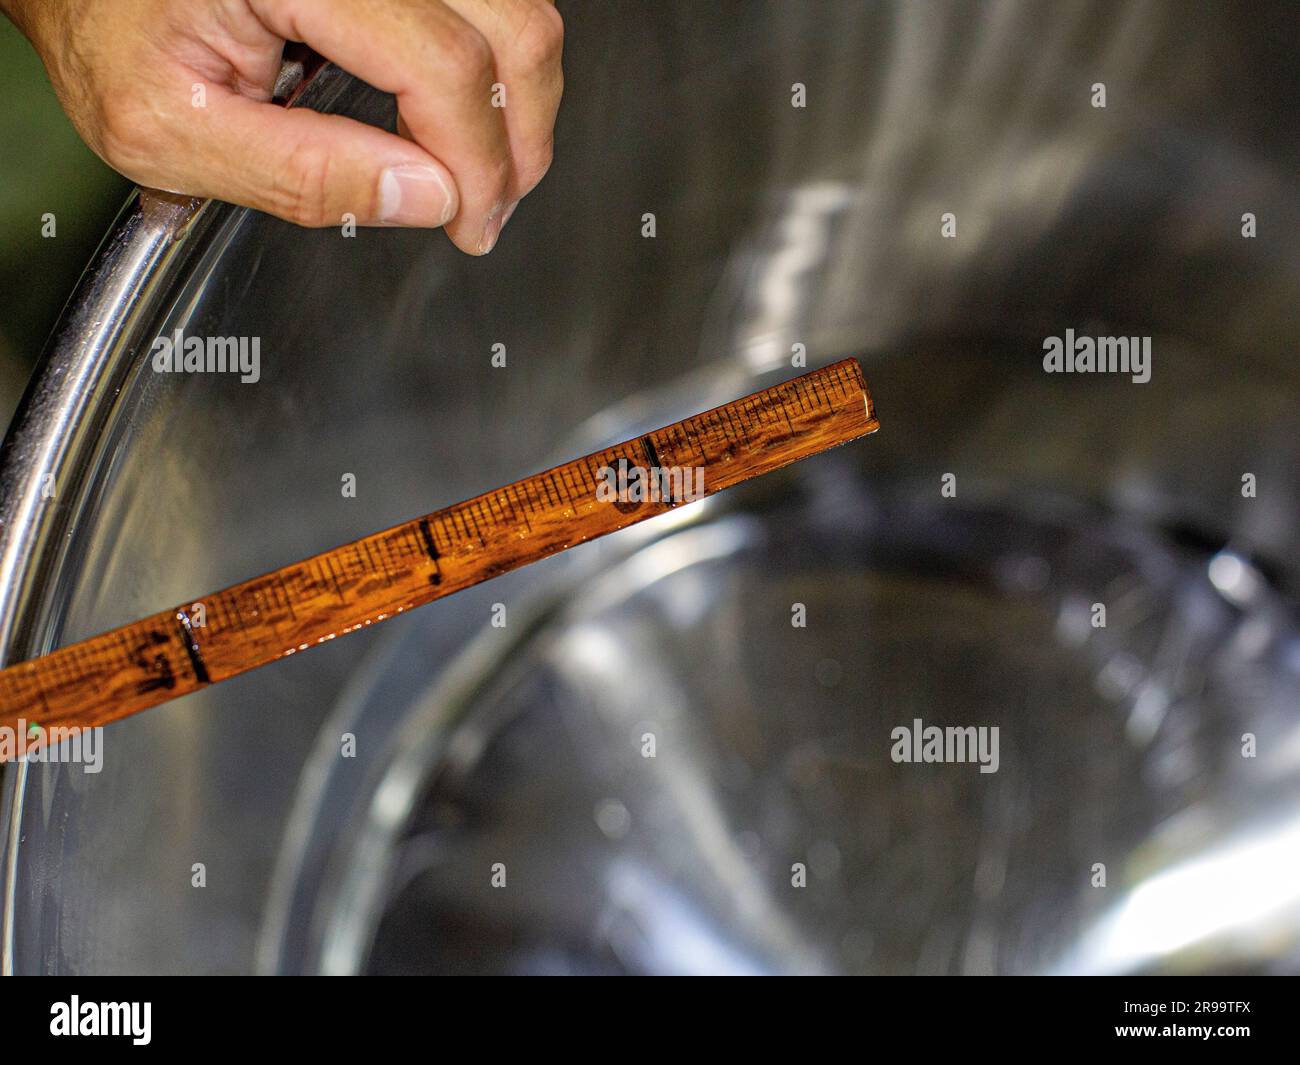 À la main, utilisez un mètre en bois pour diluer le saké avec de l'eau — pour régler le niveau d'alcool. Akashi, préfecture de Hyogo, Japon. Banque D'Images